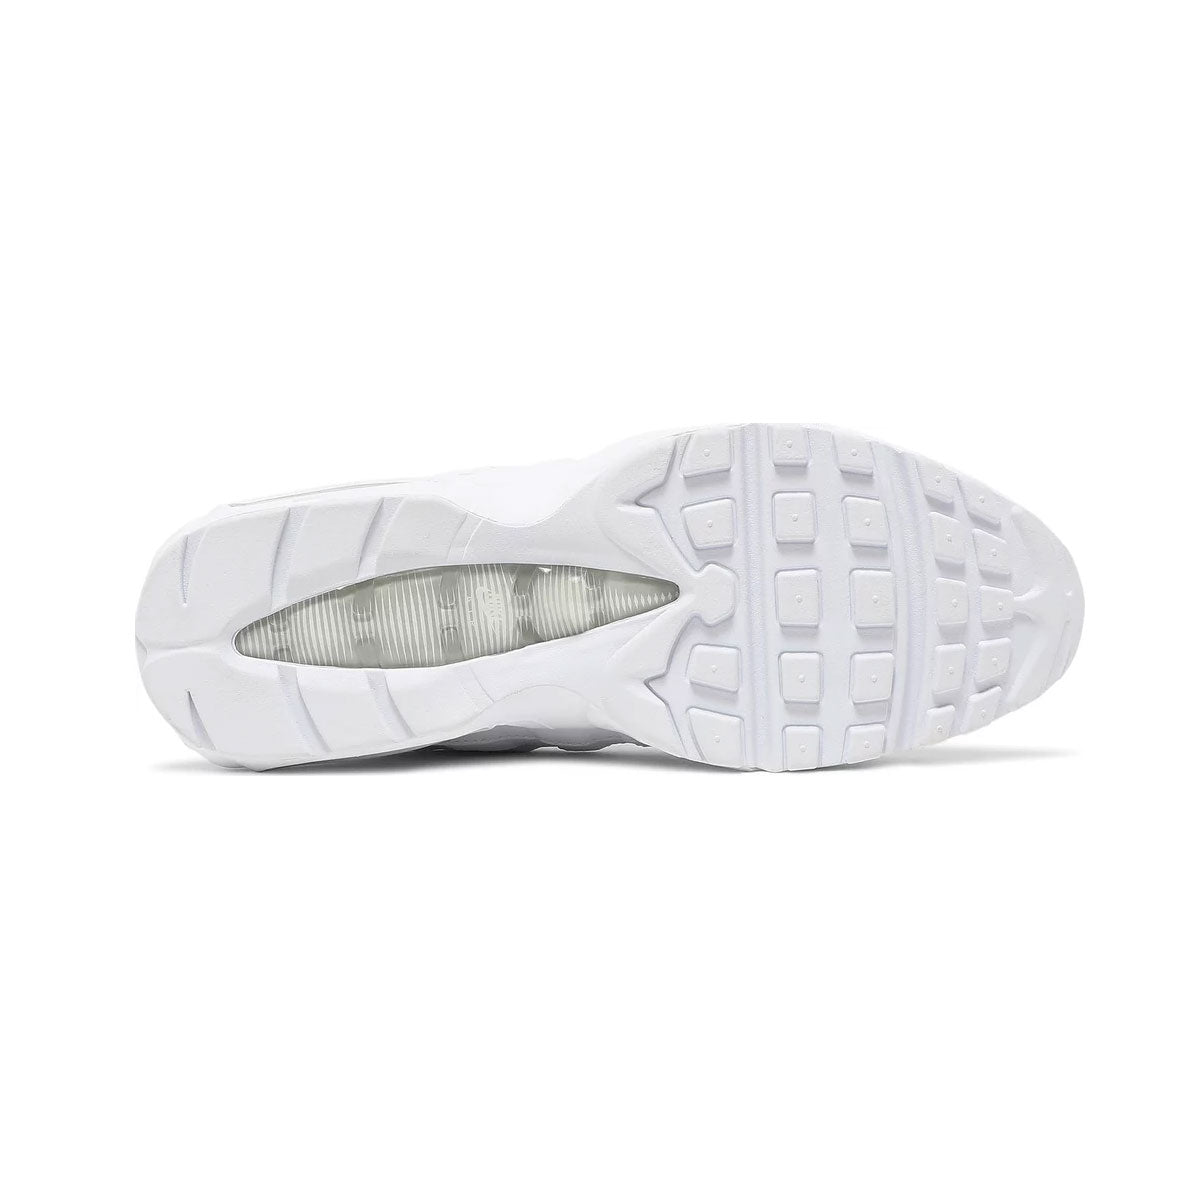 Nike Men's Air Max 95 Essential White Grey Fog